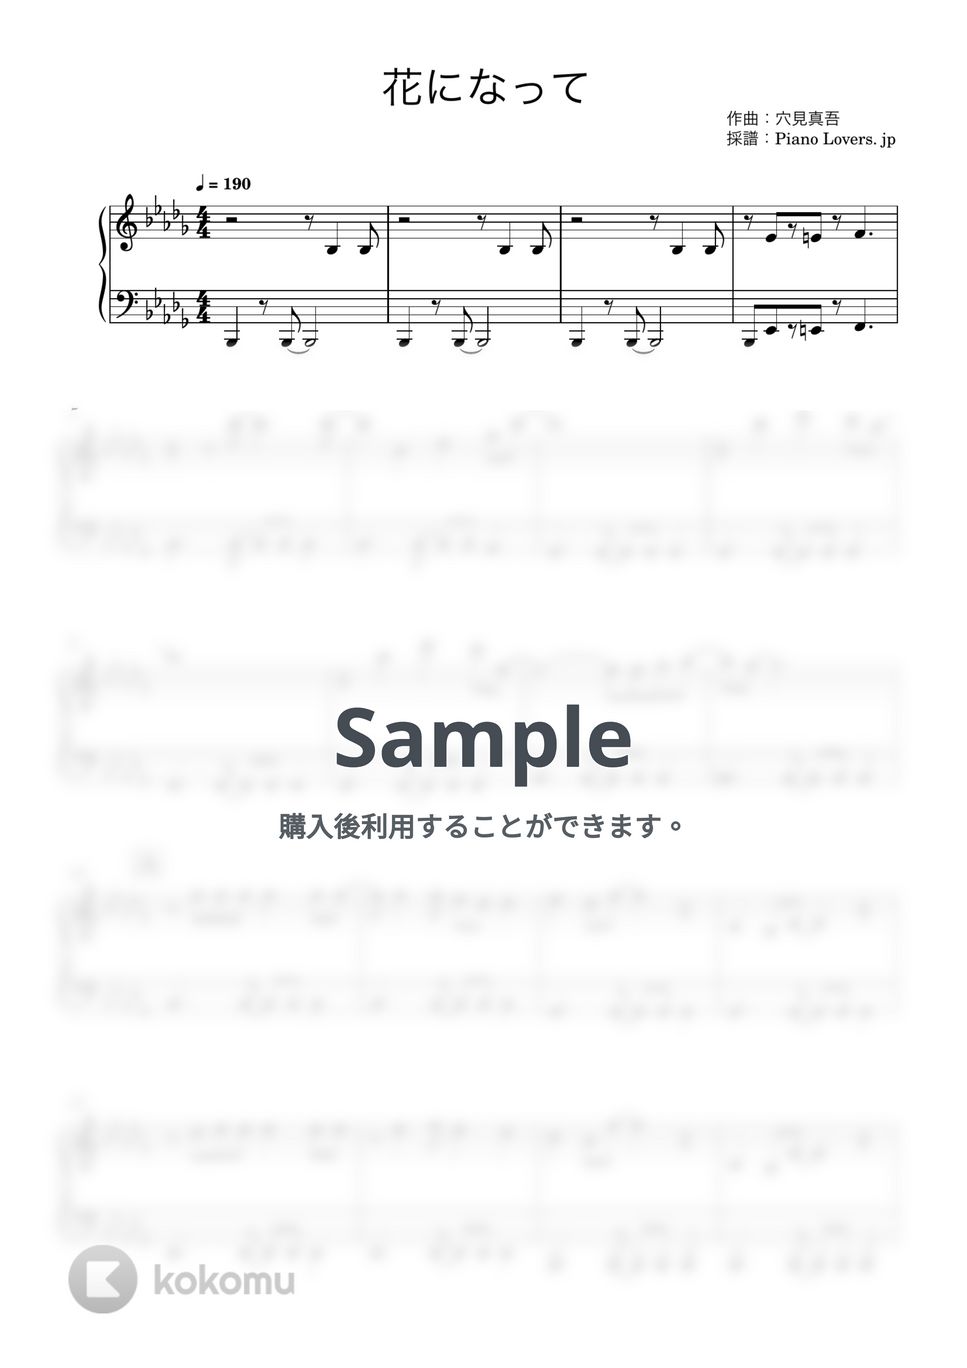 緑黄色社会 - 花になって (薬屋のひとりごと) by Piano Lovers. jp